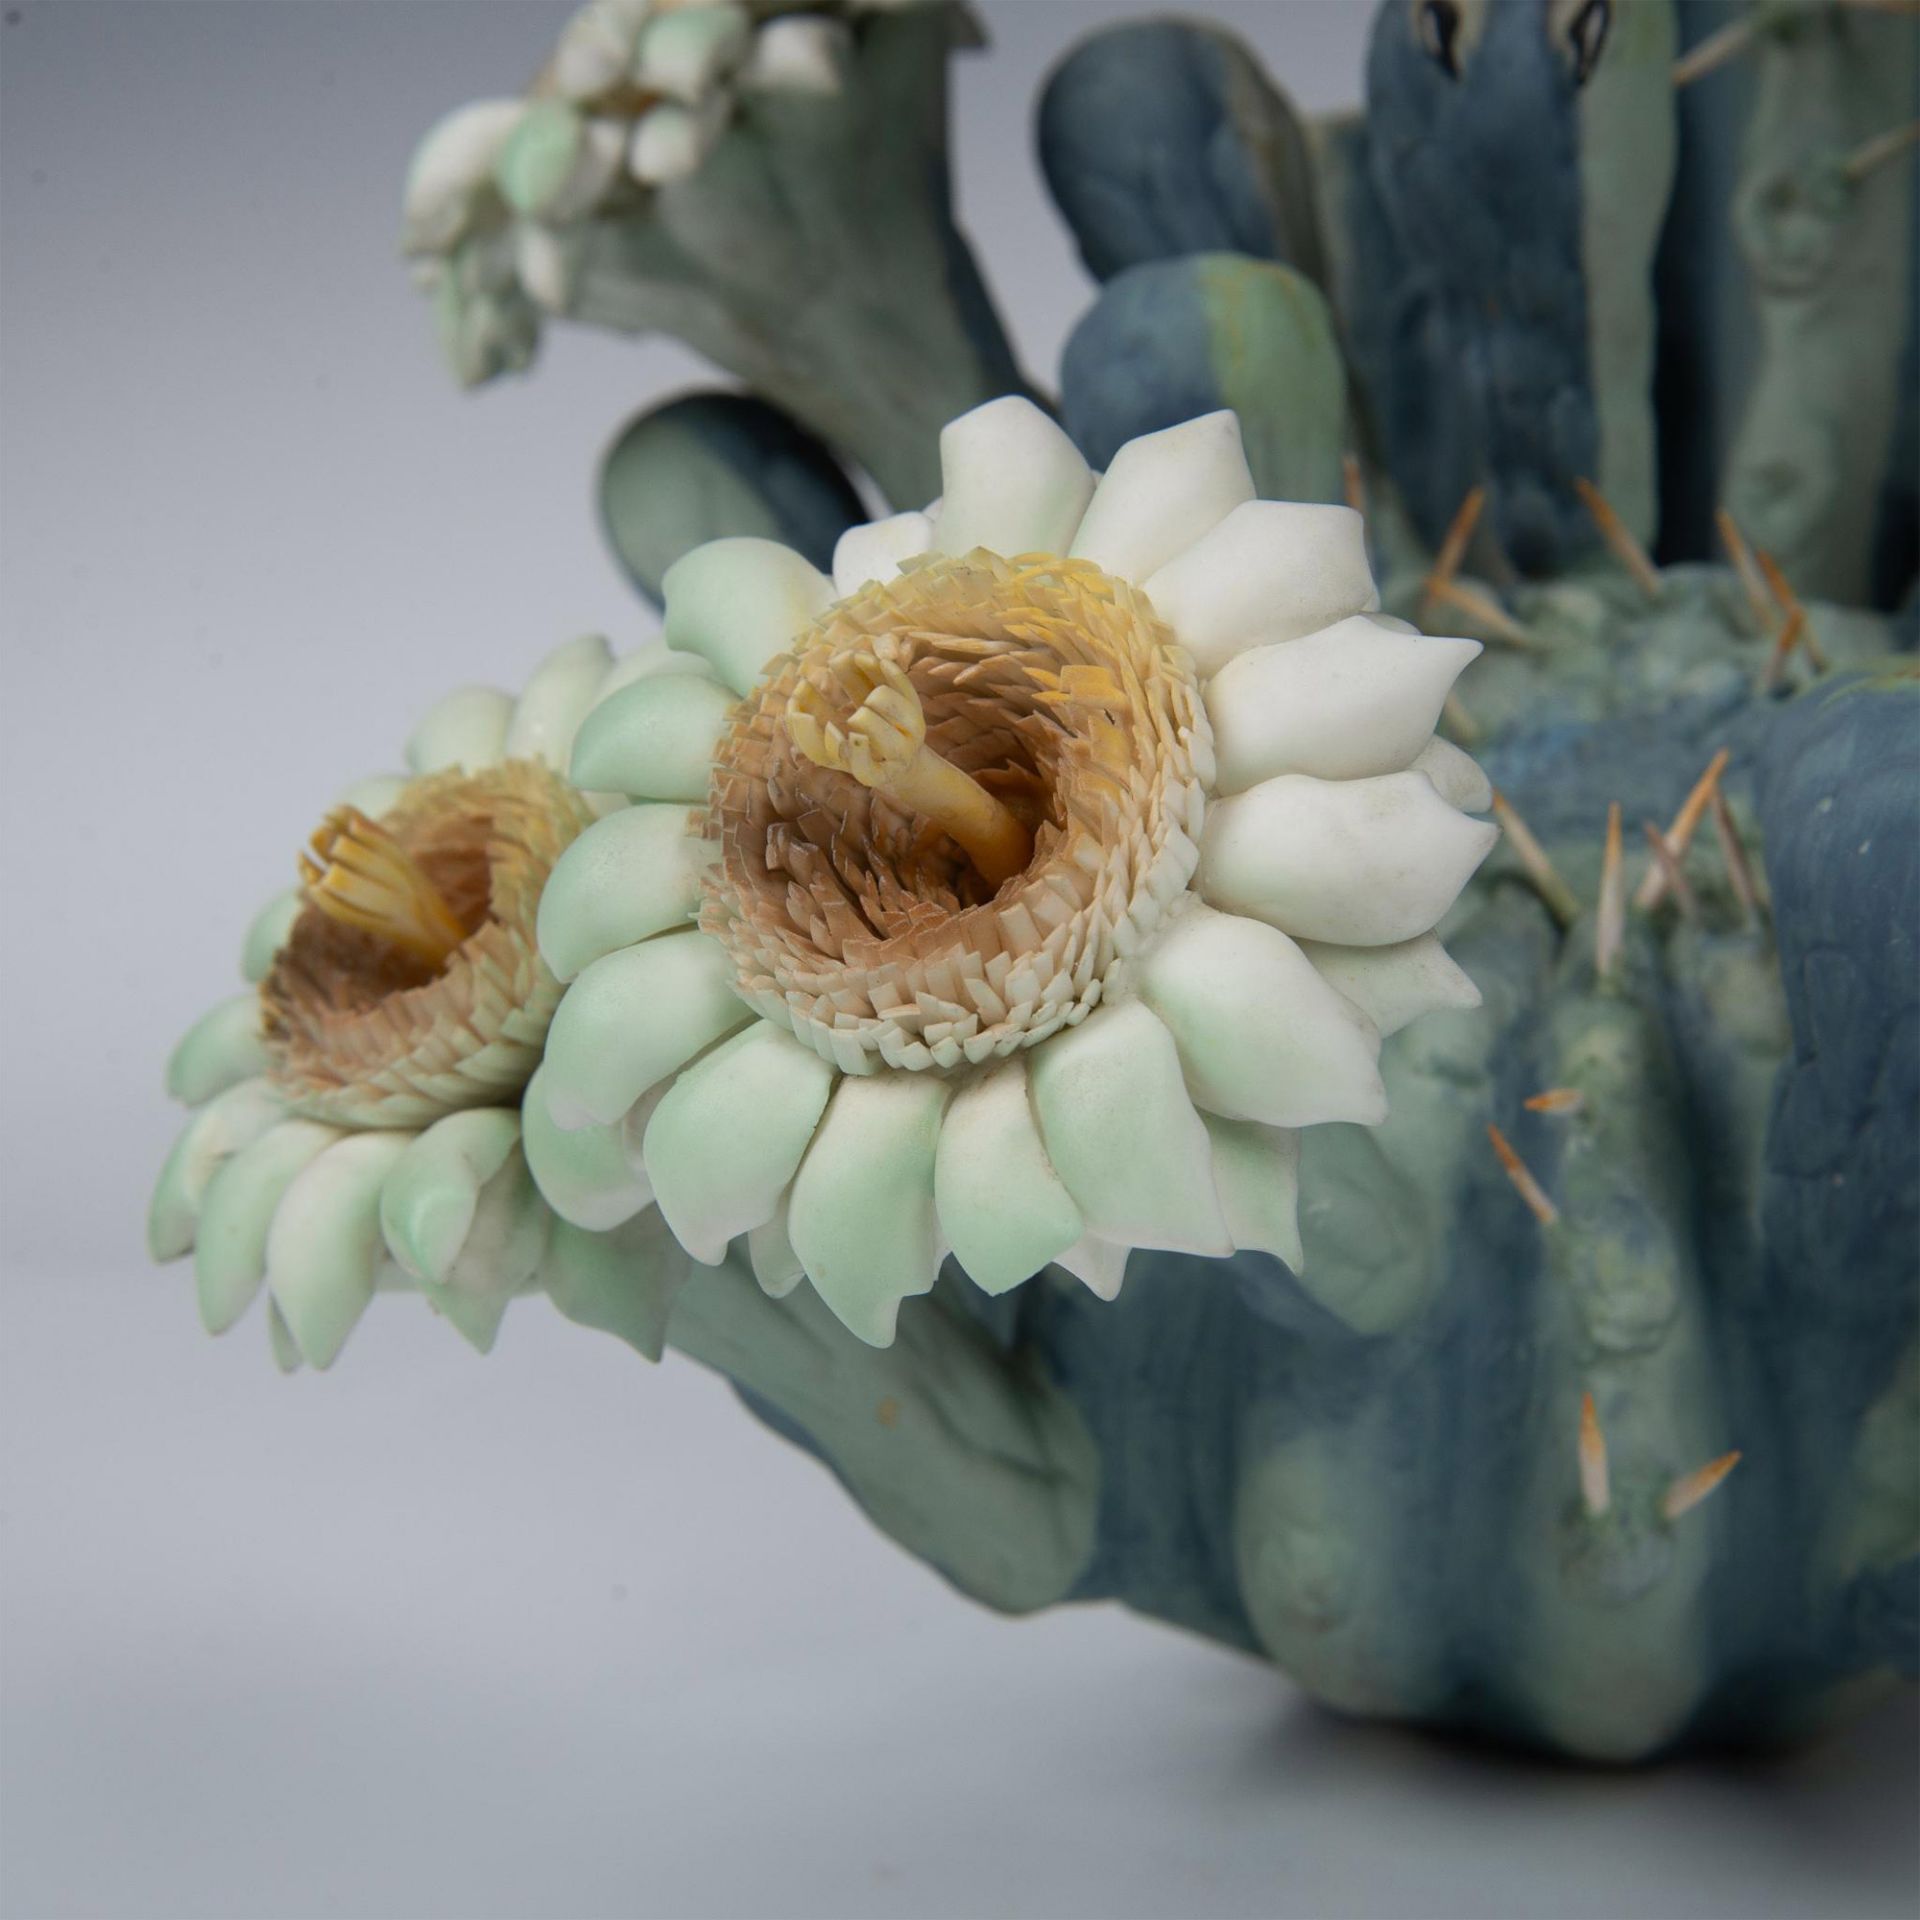 Royal Worcester Porcelain Figurine, Elf Owl and Saguaro - Image 7 of 9